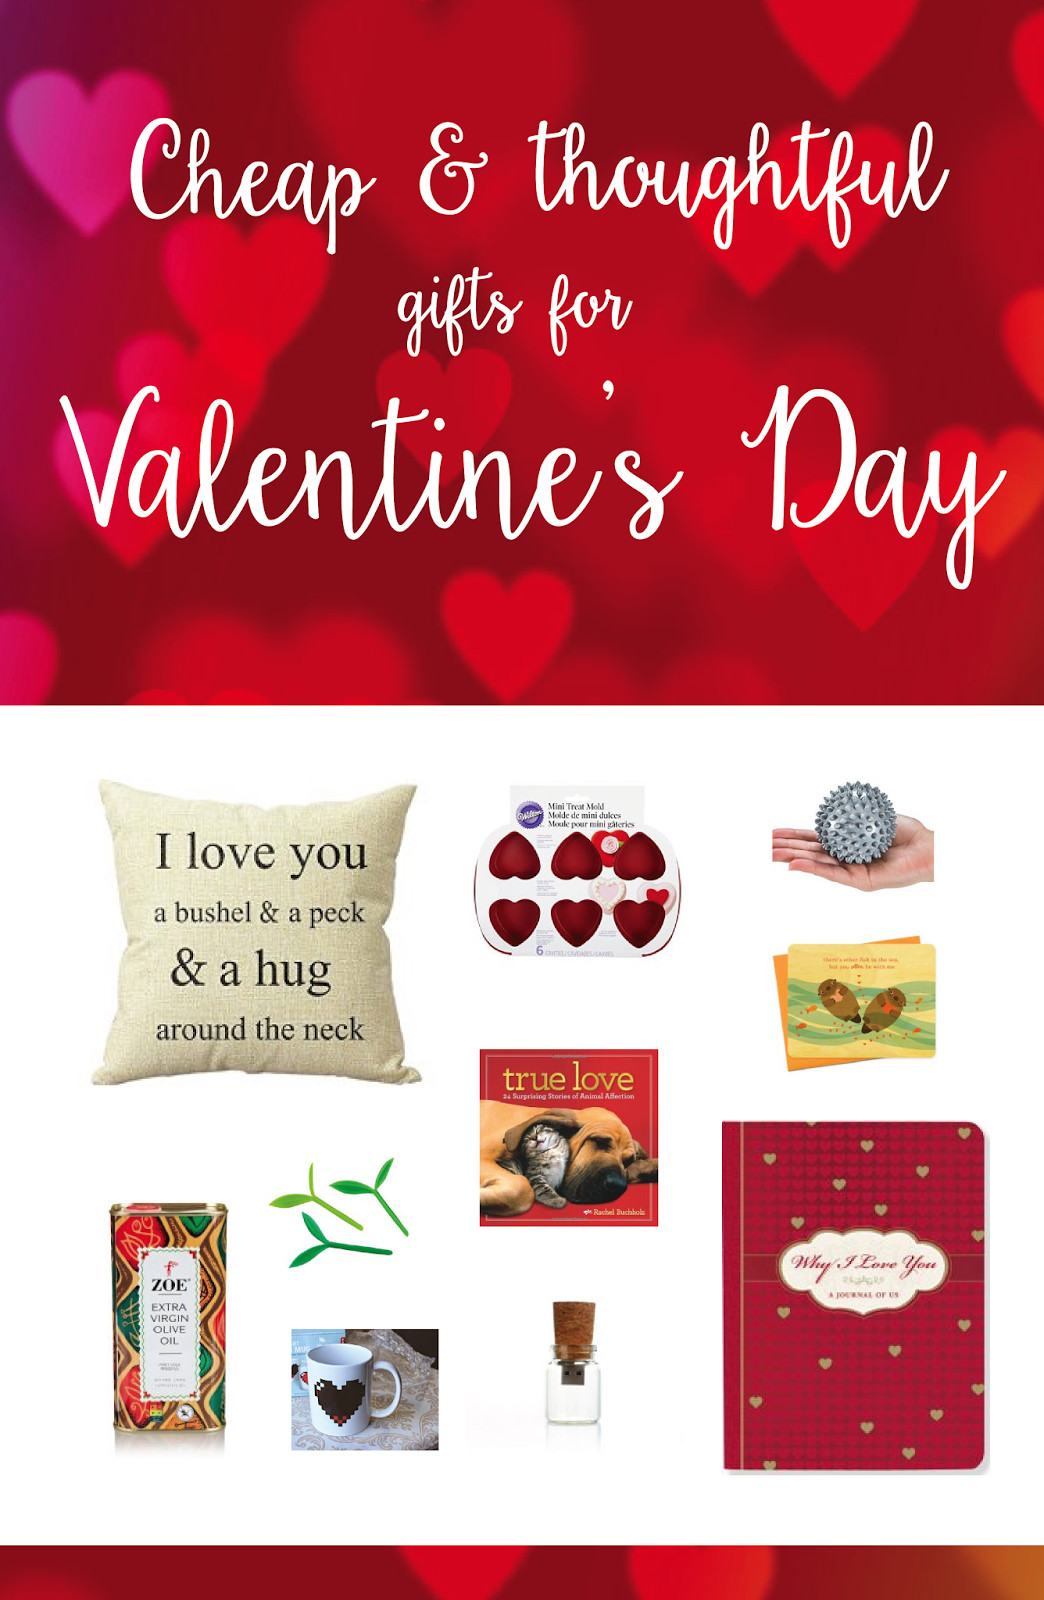 Valentine Gift Ideas Under $10
 10 Creative Thoughtful Valentines Gifts under $10 Great